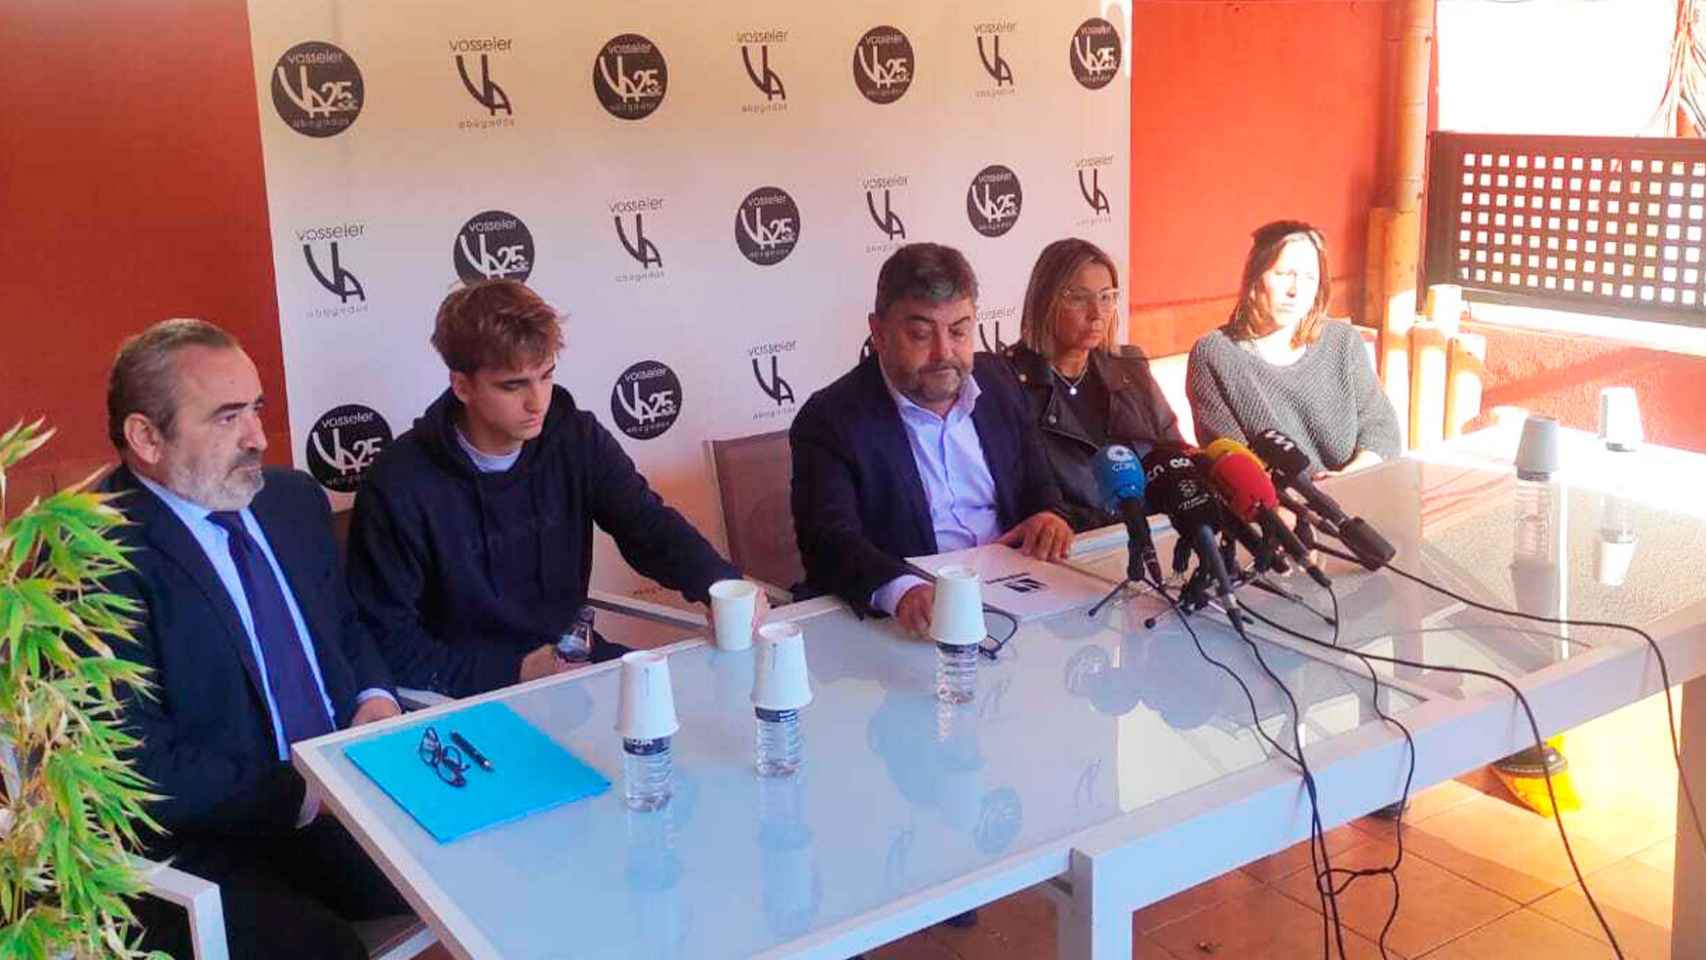 La familia de Xavi Moya, con sus abogados del despacho Vosseler